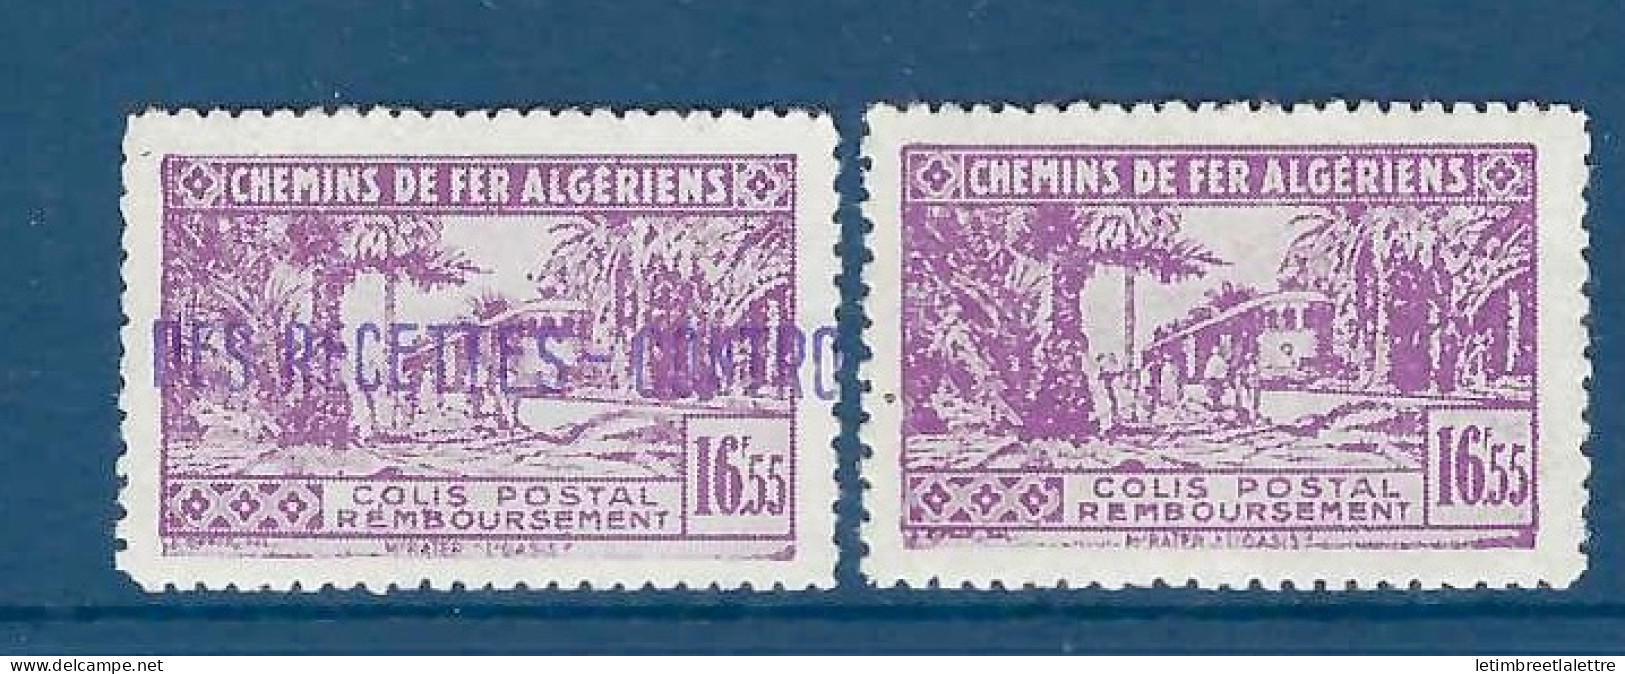 Algérie - Colis Postaux - YT N° 94 * - Neuf Avec Charnière - 1941 1942 - Paketmarken